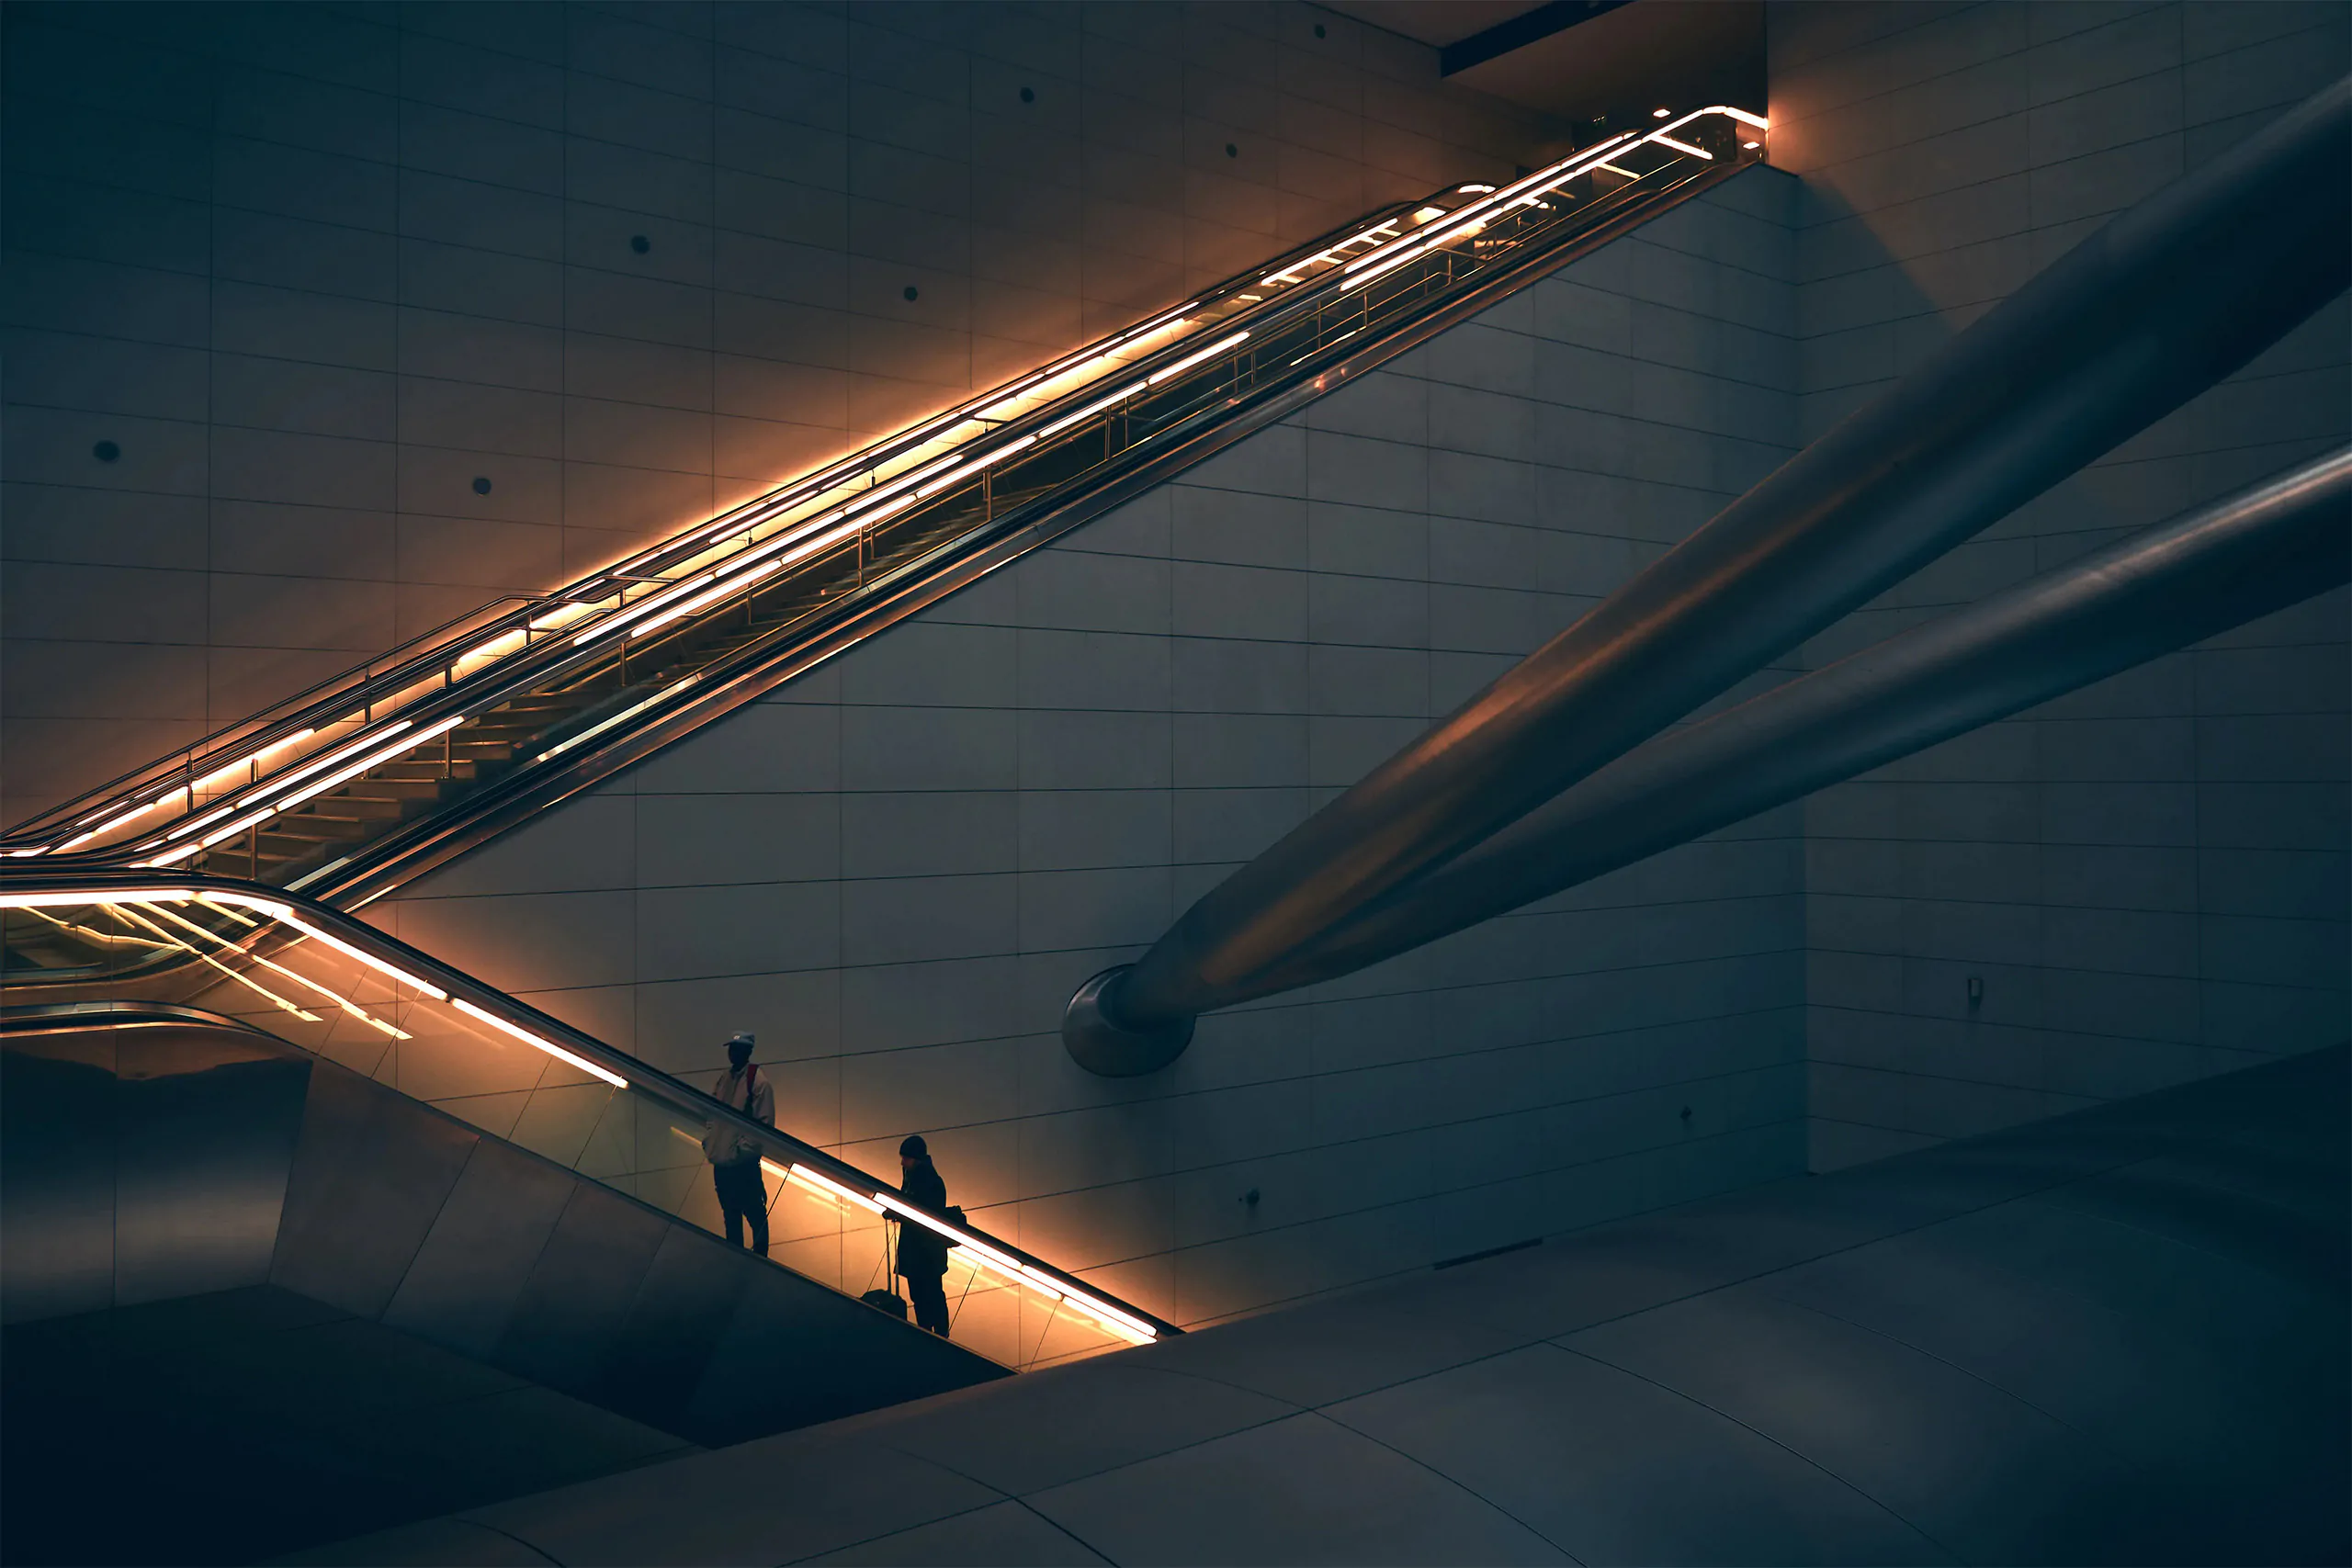 Personne debout sur un escalator dans un bâtiment moderne avec des accents d'éclairage chauds, représentatifs de l'esthétique d'une agence d'identité de marque.